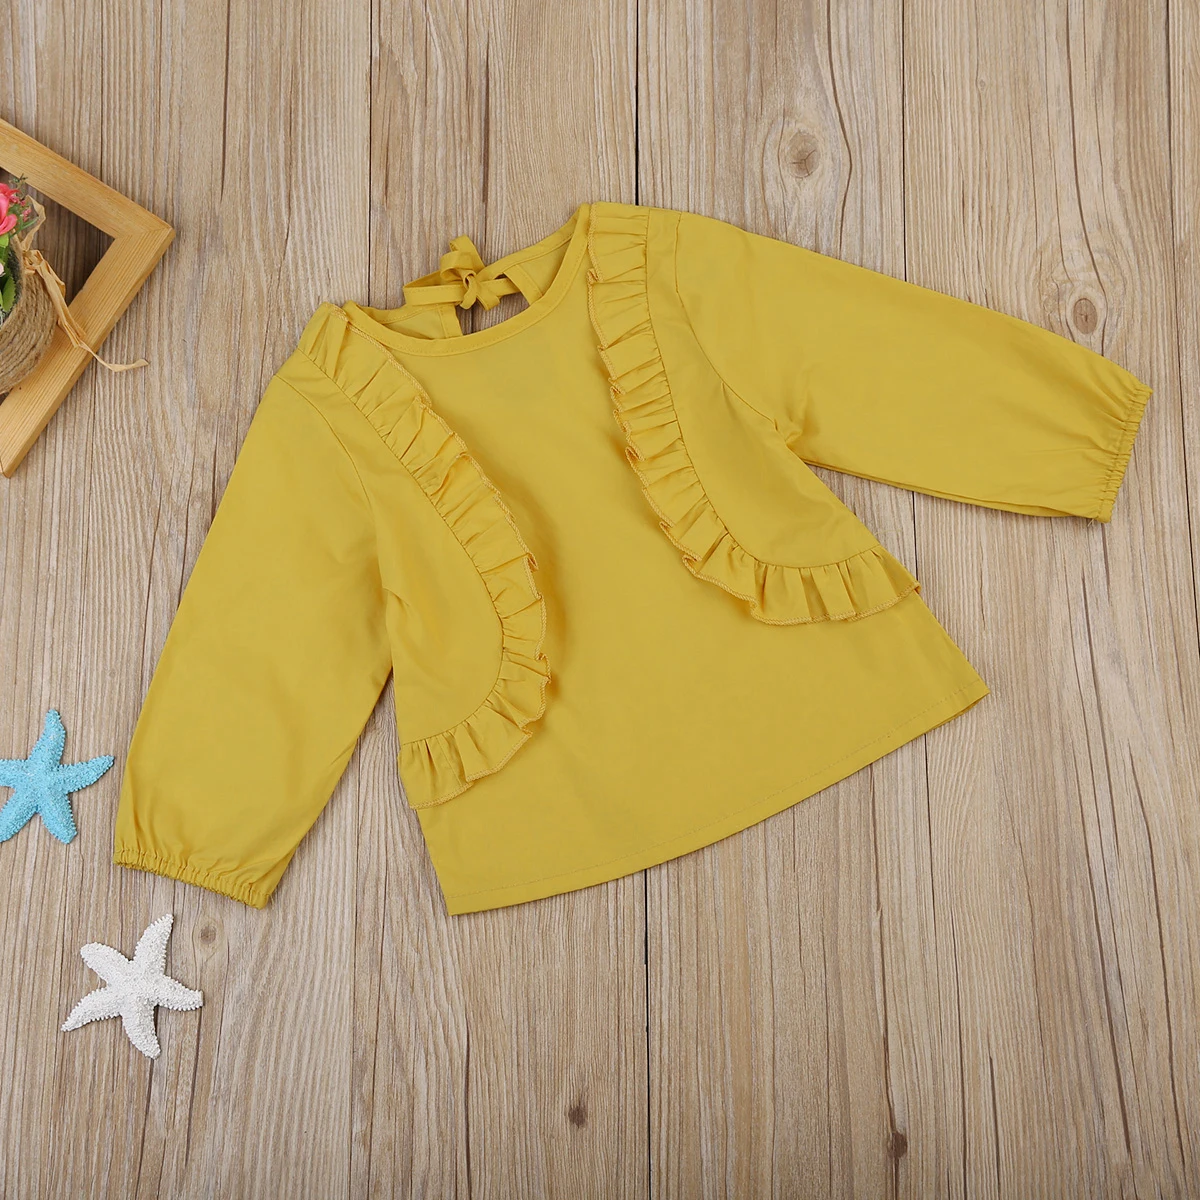 PUDCOCO новые для маленьких девочек осень с длинным рукавом Футболка с оборкой свитер милые наряды От 0 до 3 лет